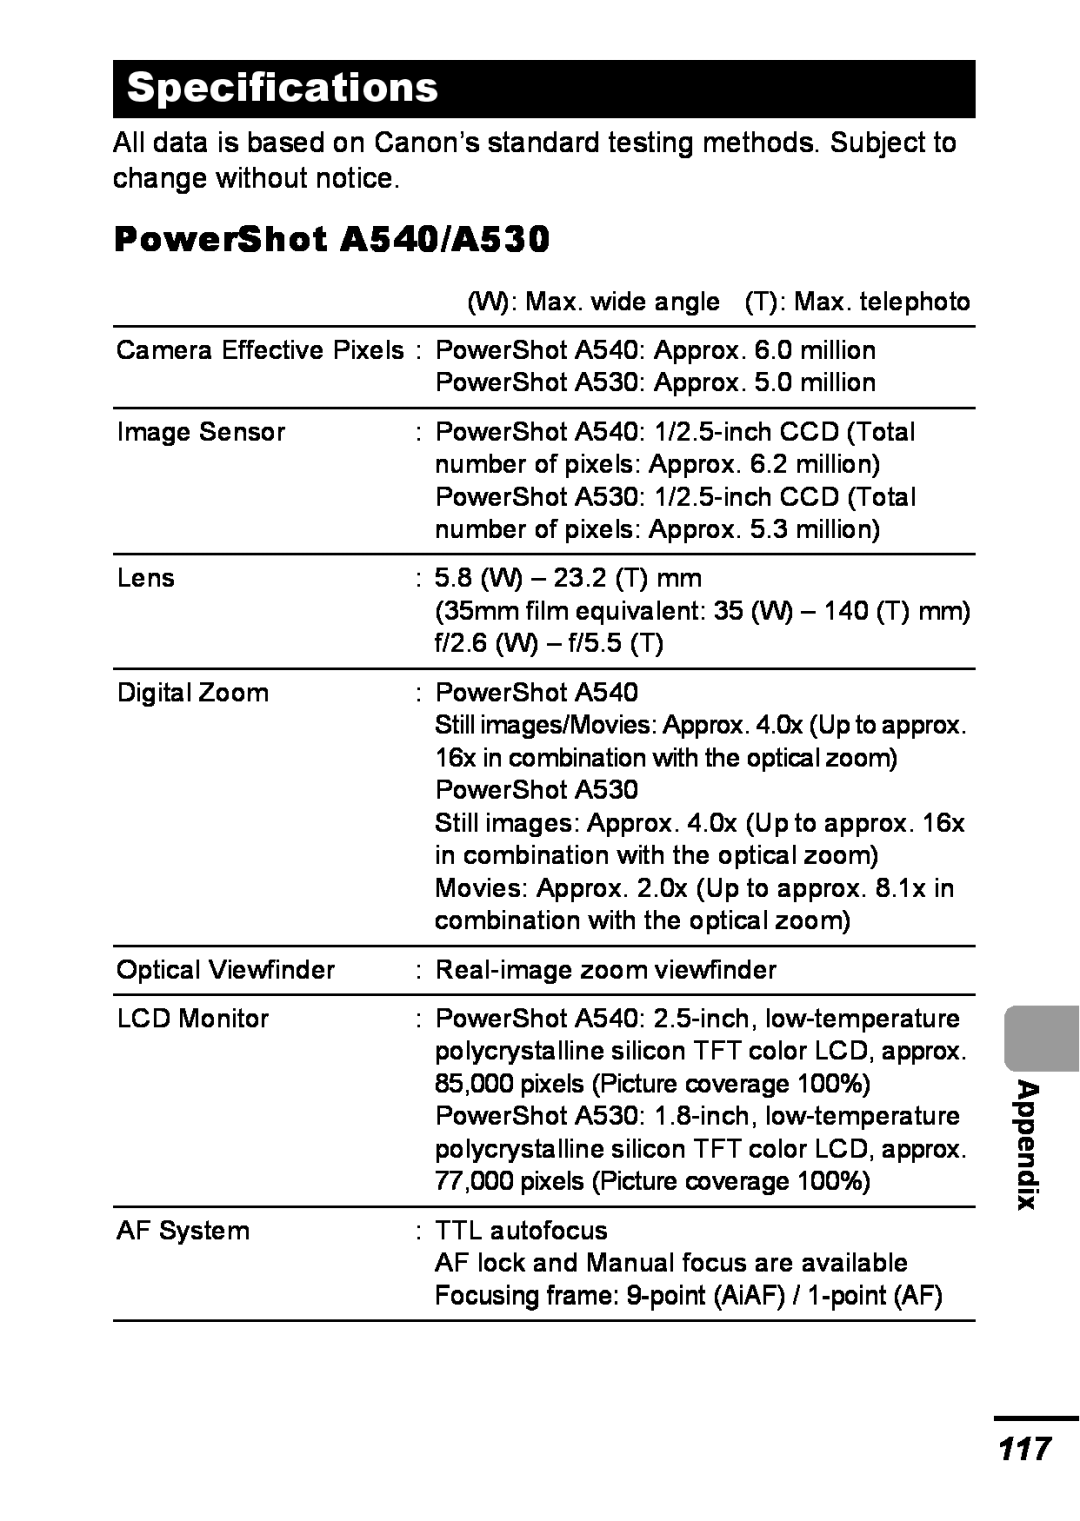 Canon appendix Specifications, PowerShot A540/A530, Appendix 